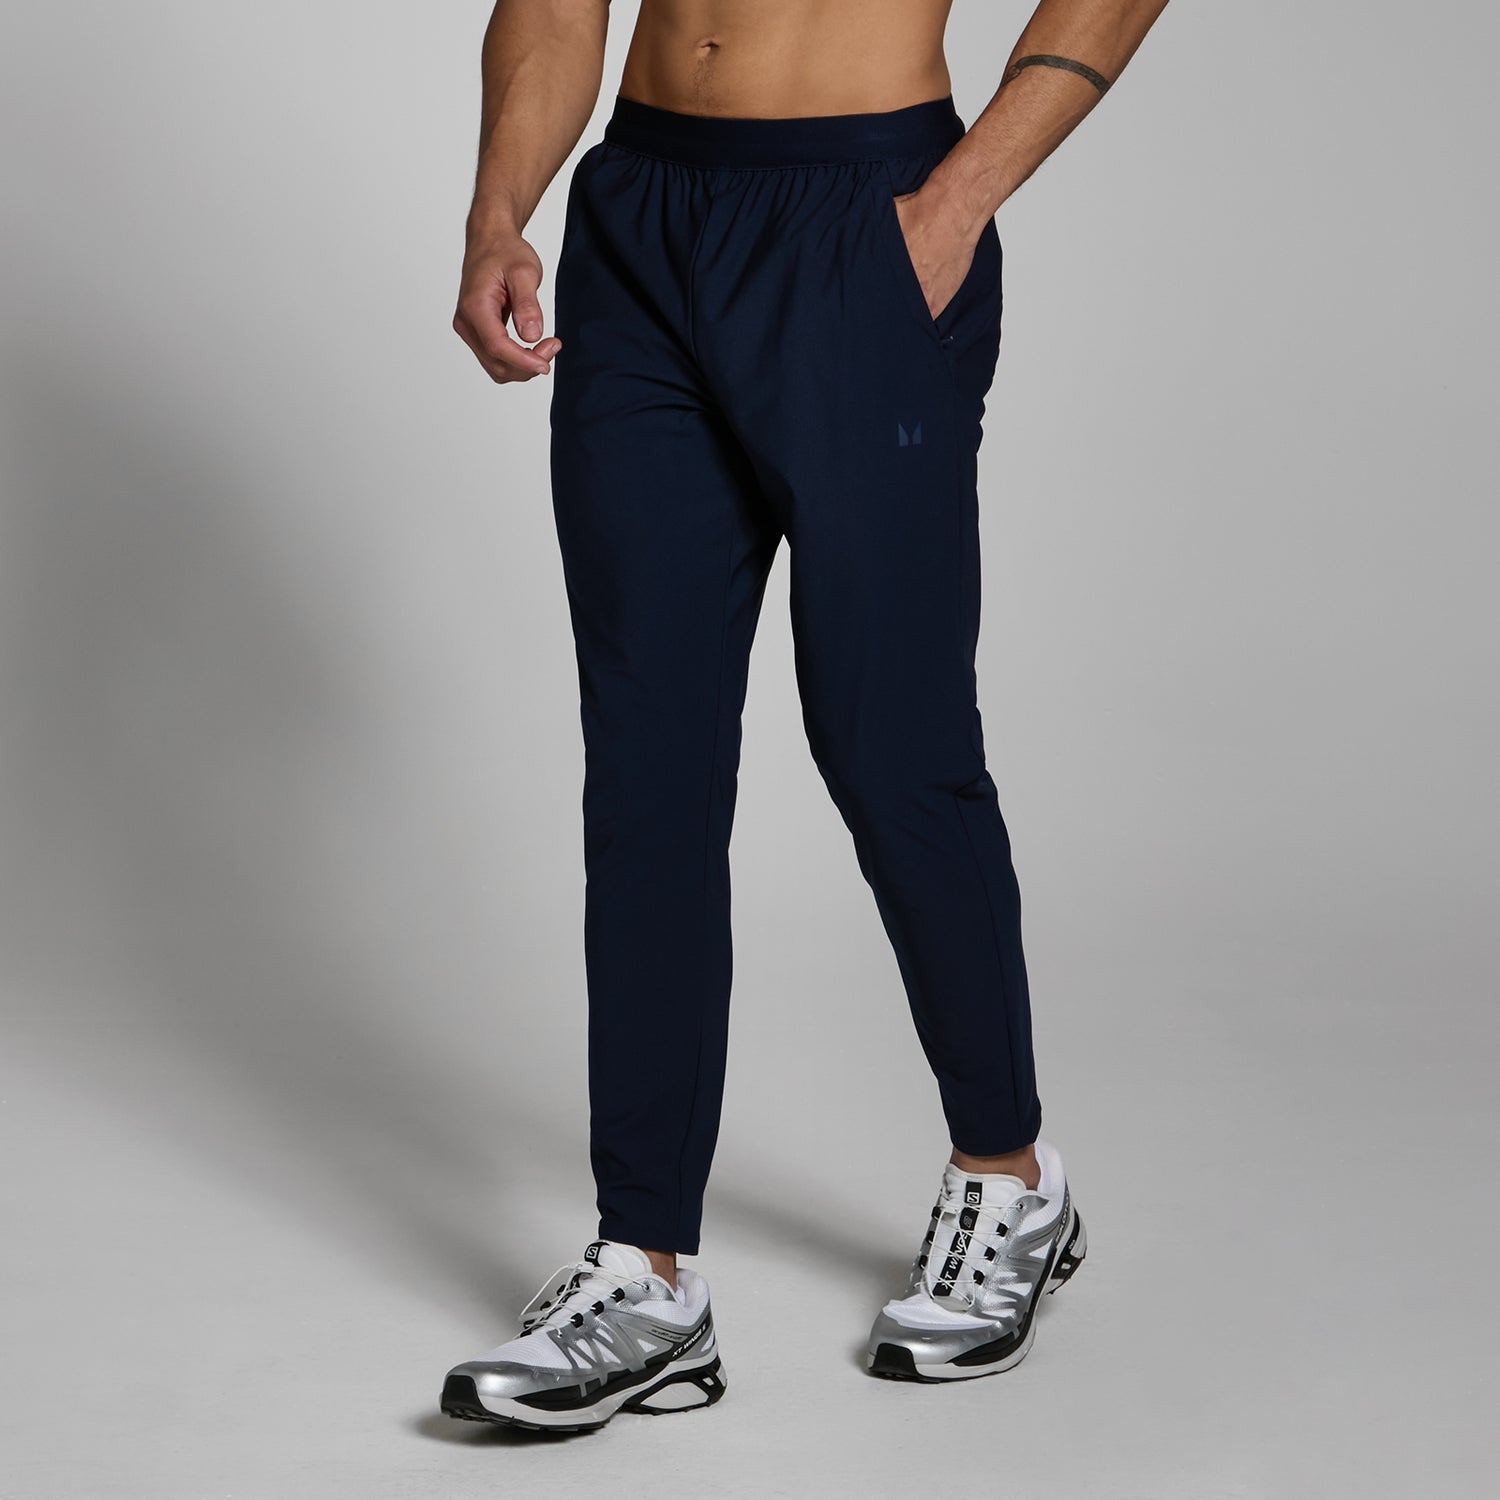 Pantaloni da jogging in tessuto MP Lifestyle da uomo - Blu navy scuro - XS